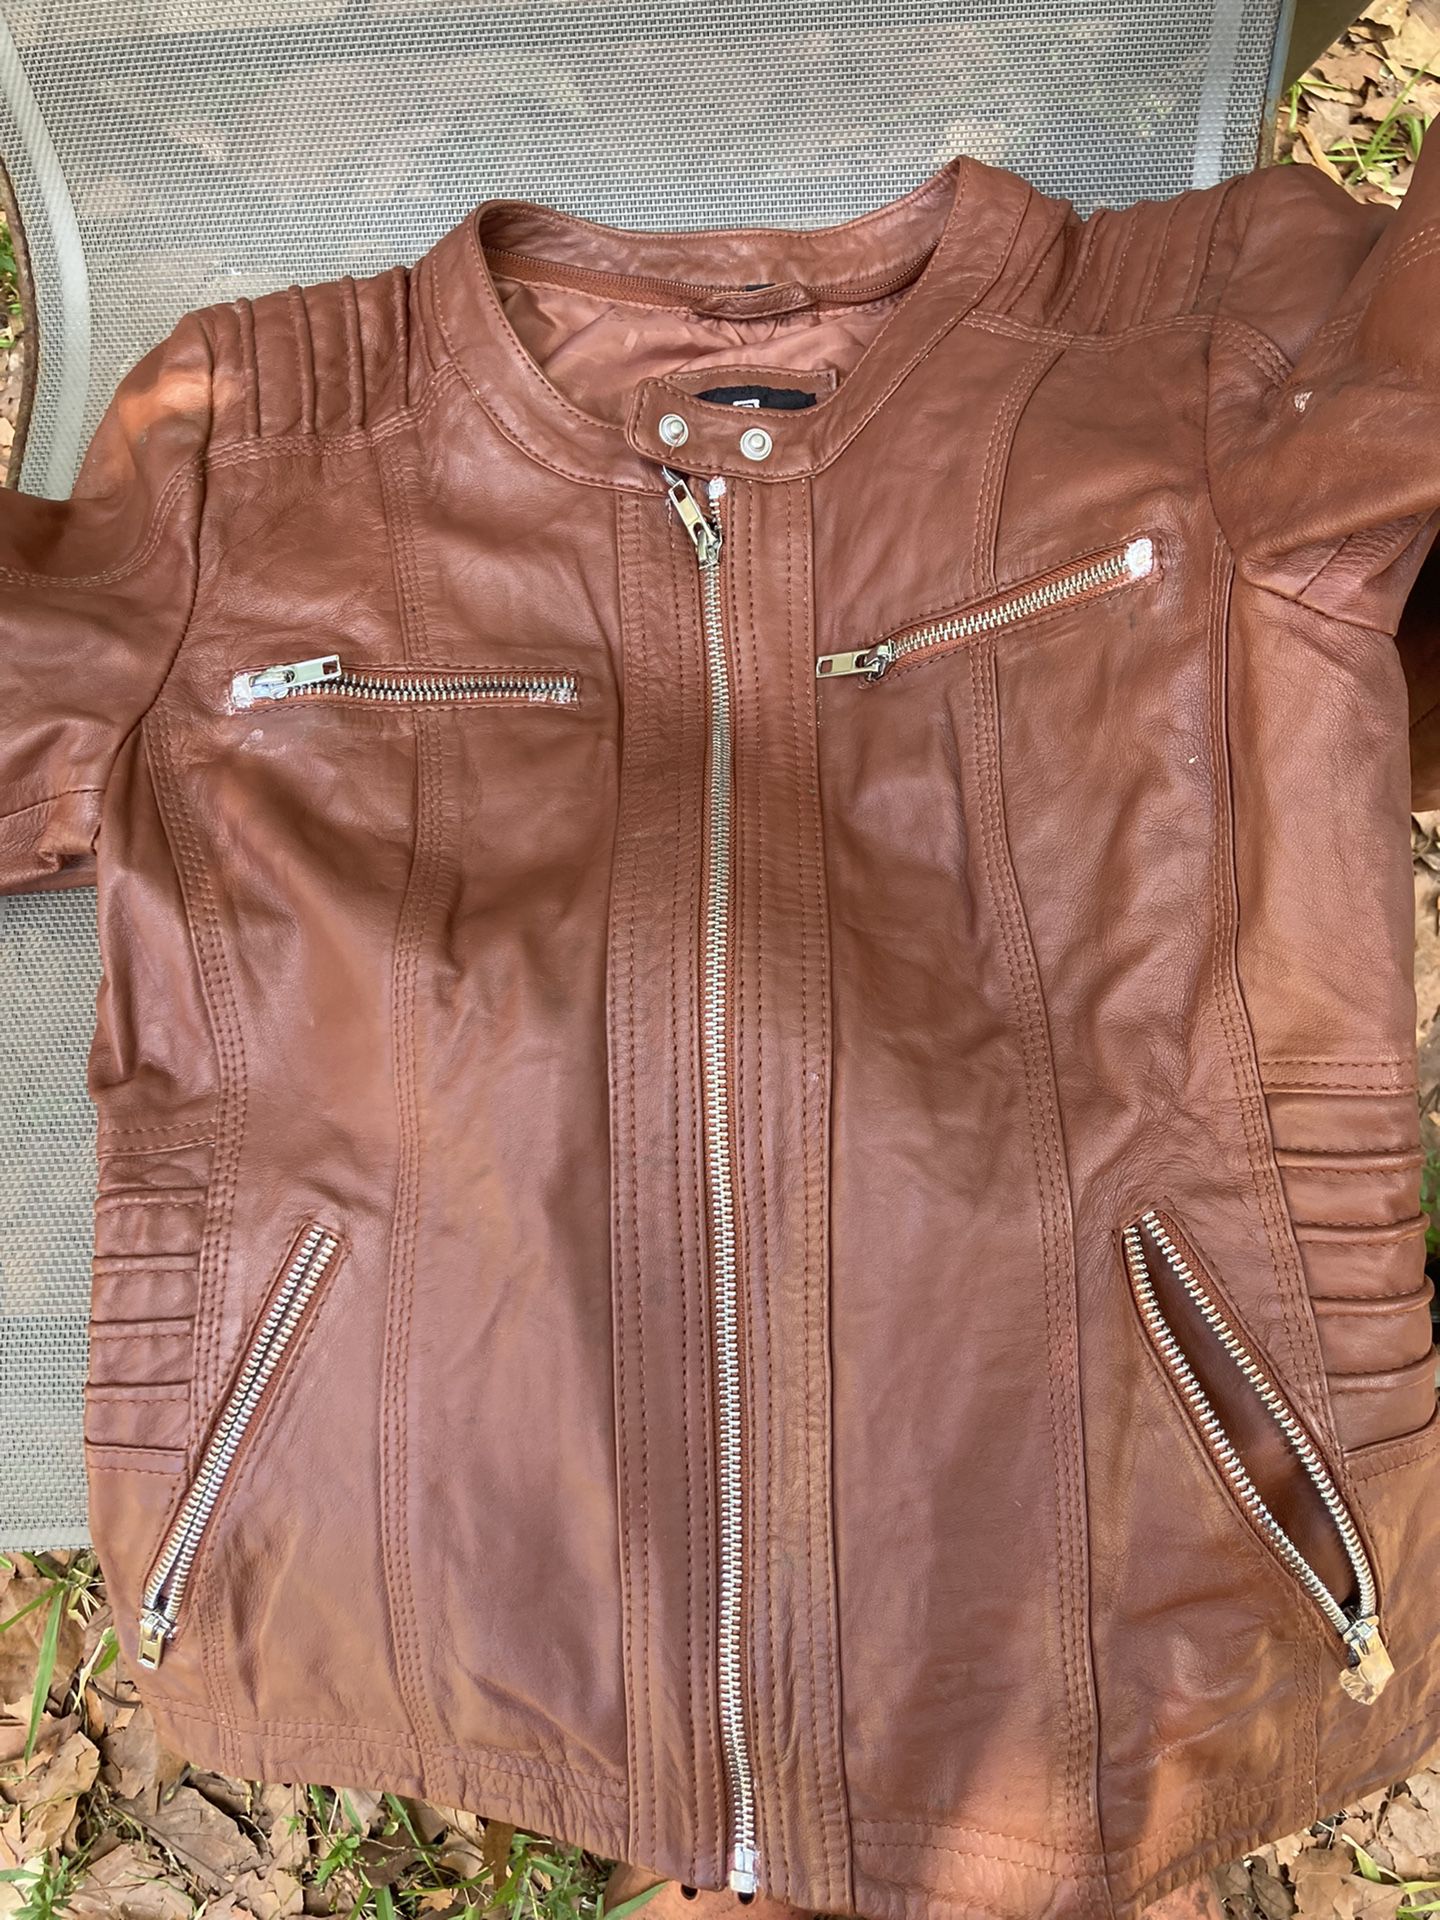 Leather Jacket Small size new.Chaquela de cuero talla pequena nueva